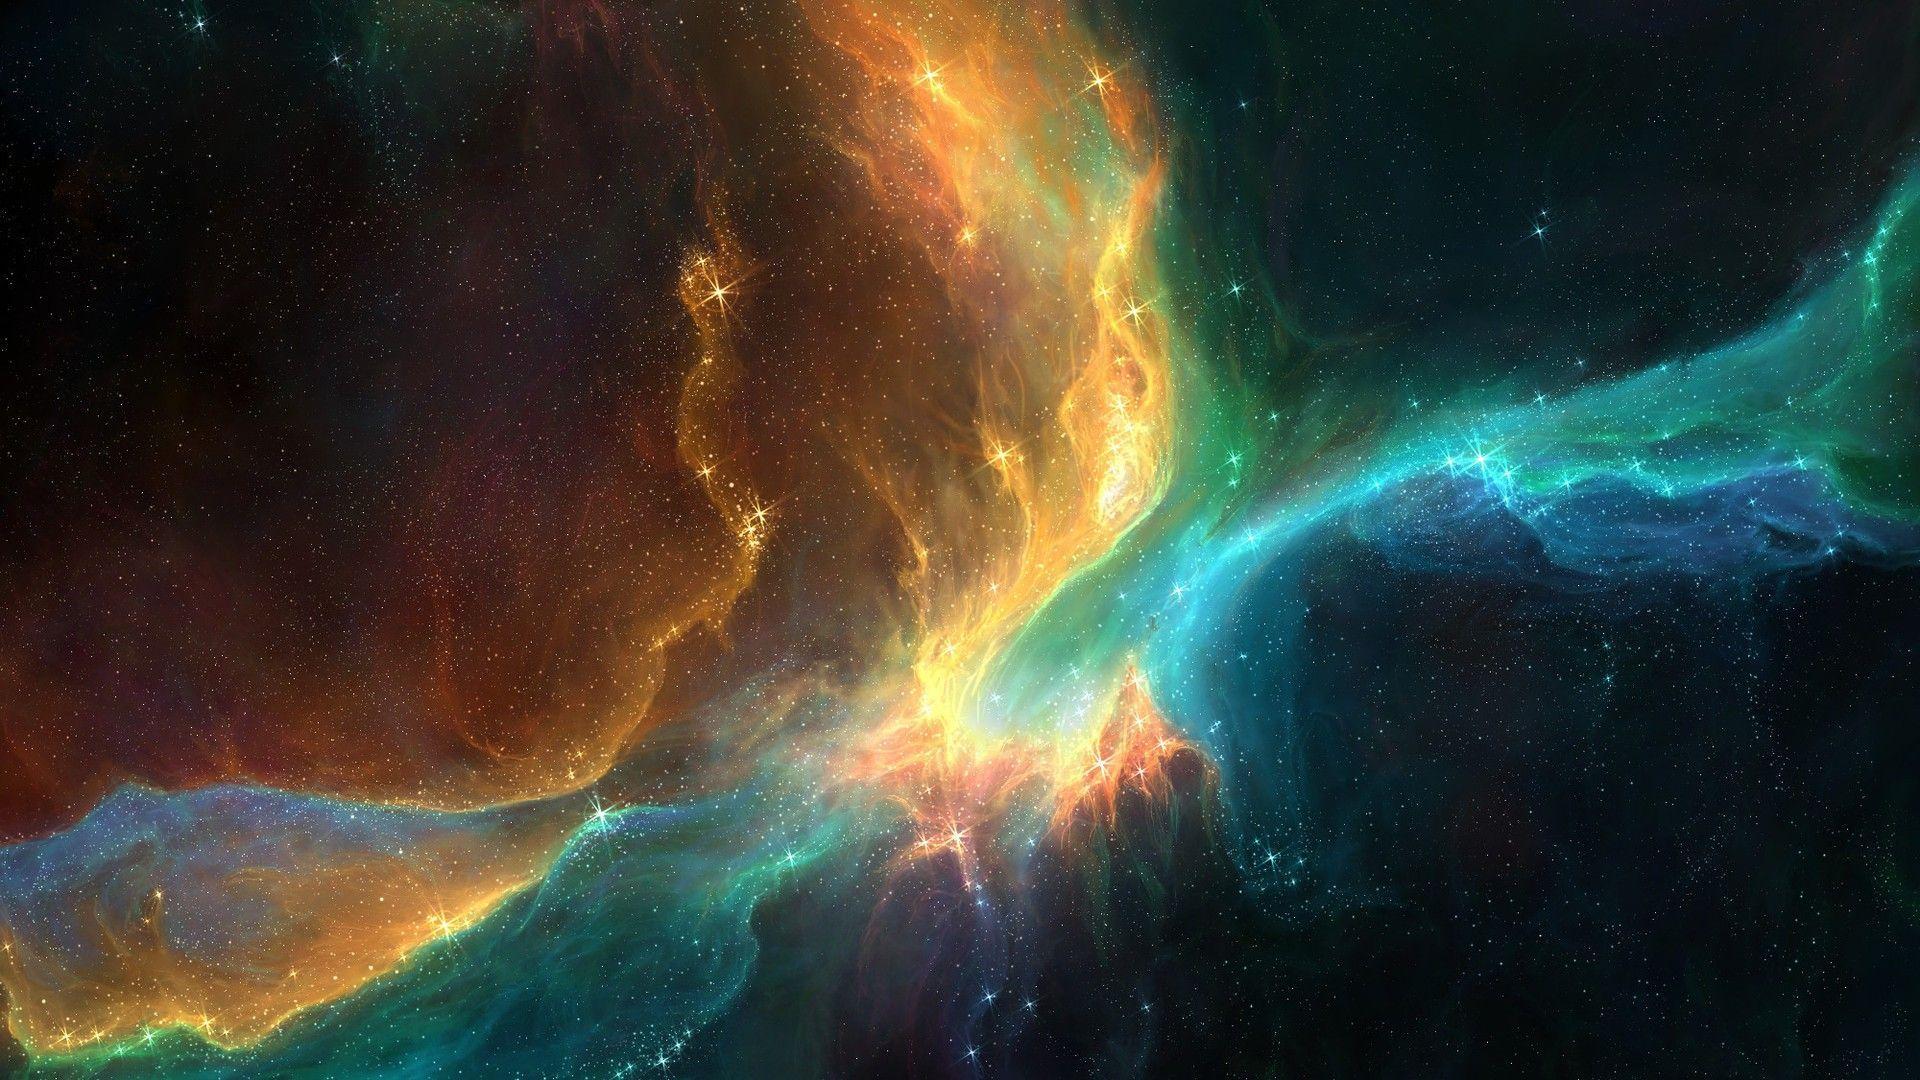 Outer Space Nebula HD Cool 7 HD Wallpaper. lzamgs